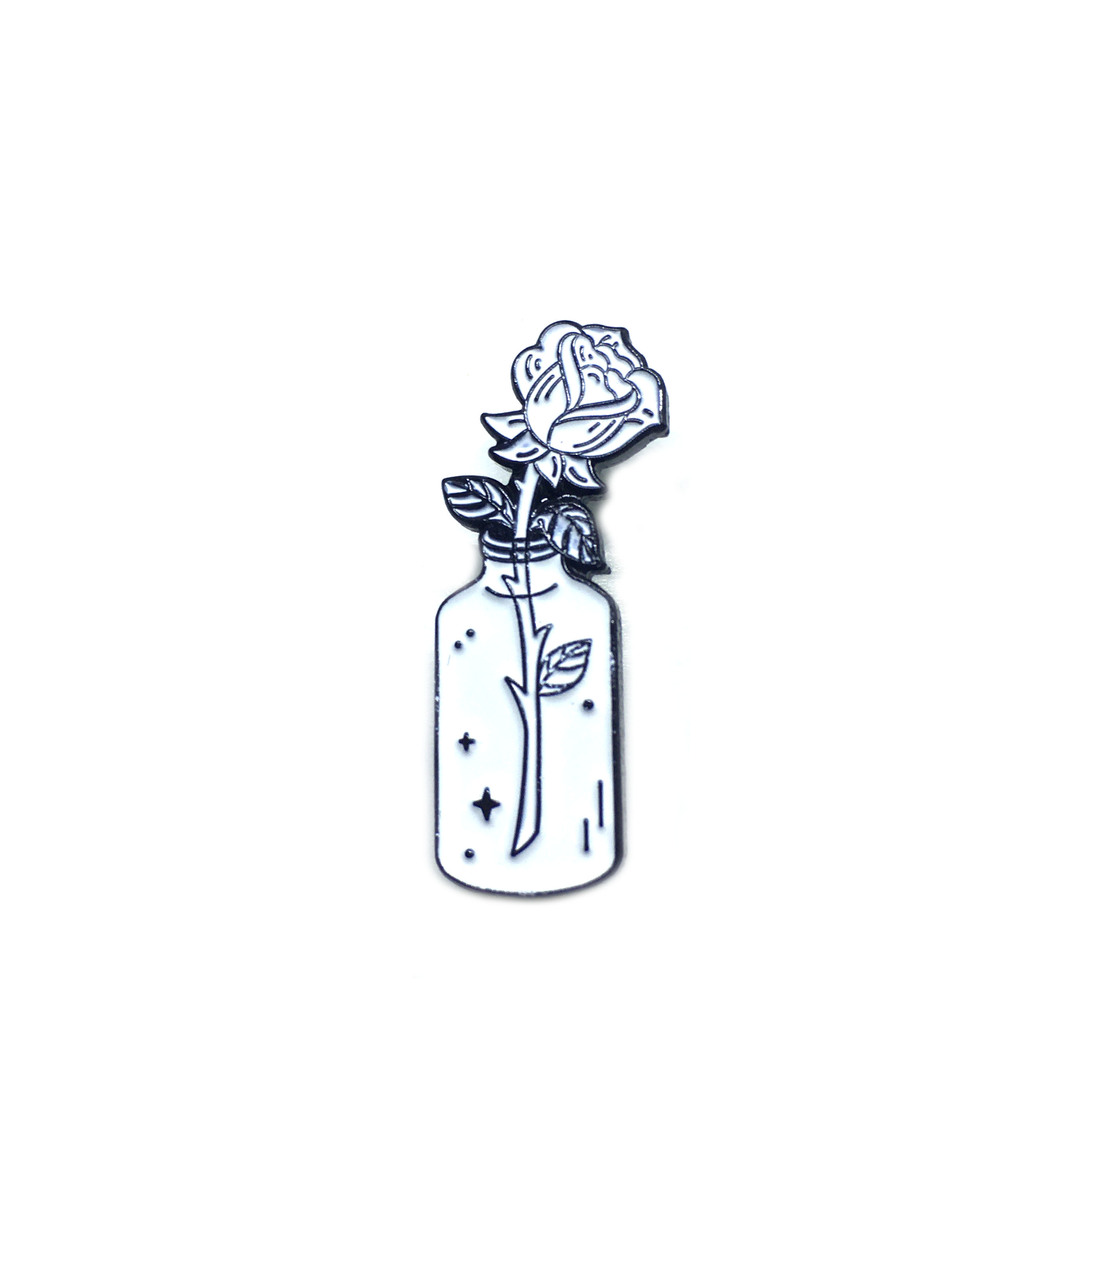 White Rose Enamel Pin Badge